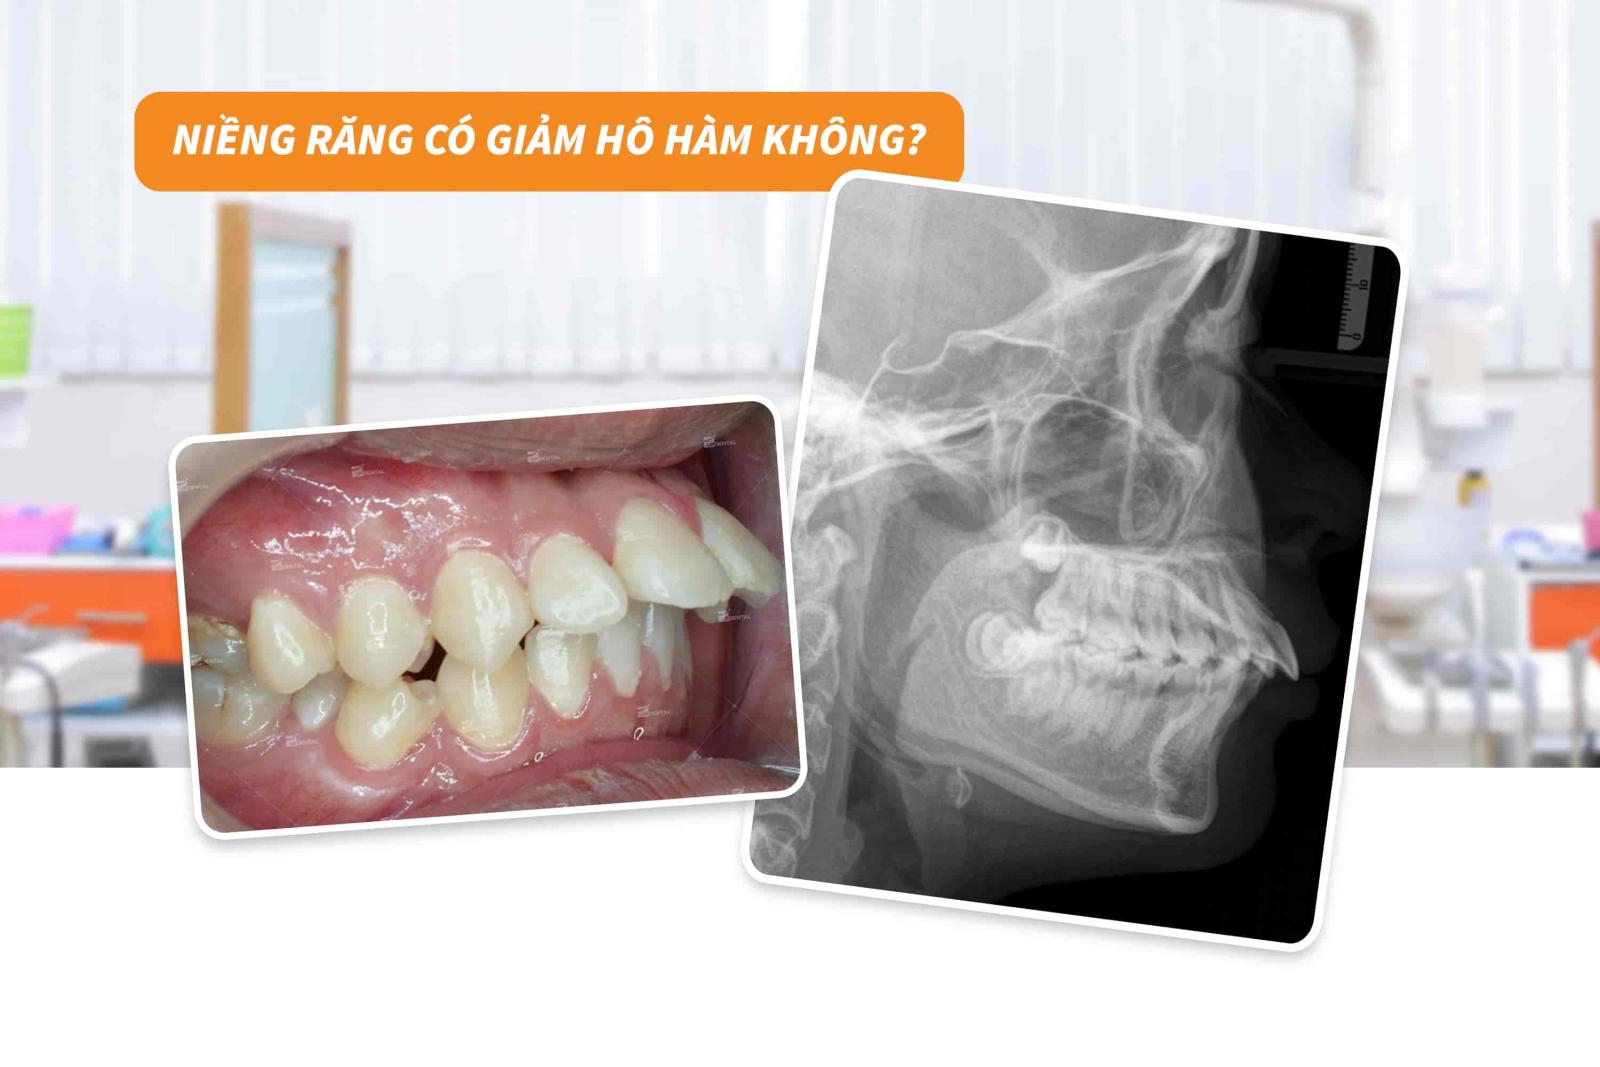 Niềng răng có giảm hô hàm không?